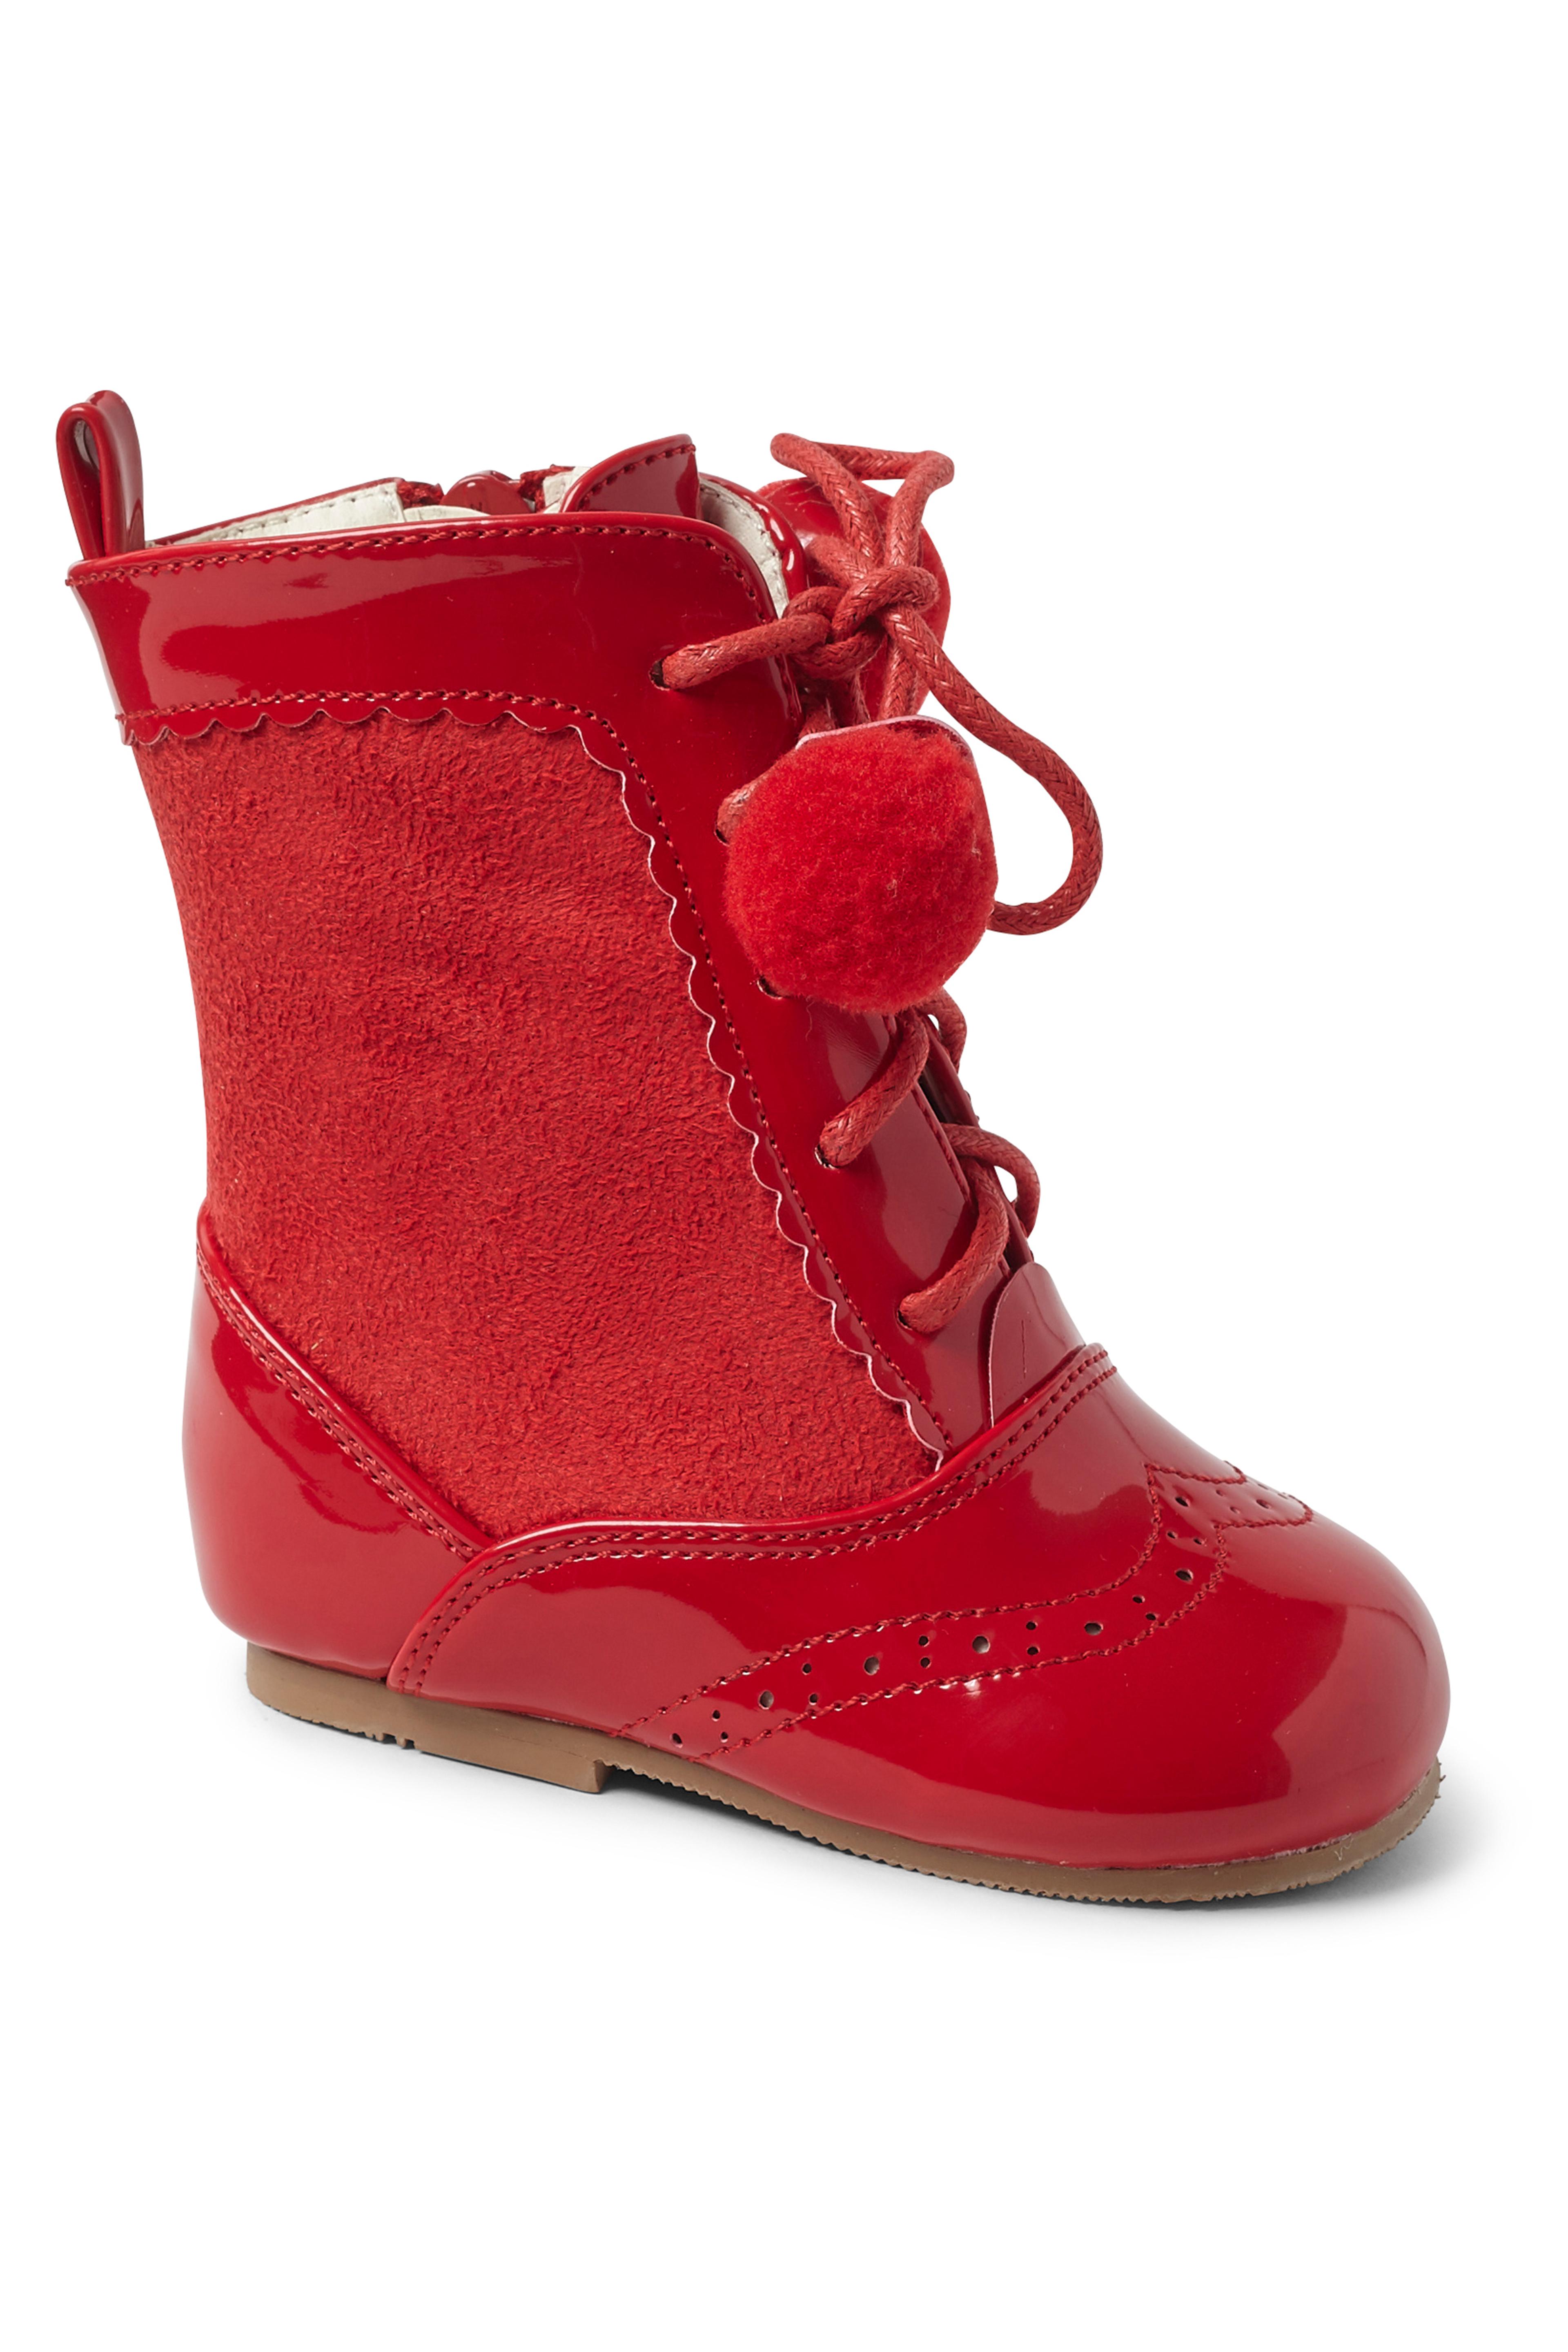 Kinder Lackleder Sienna Brogue Stiefel mit Schnürung und Pom-Pom Details, Unisex Klassische Schuhe - Rot